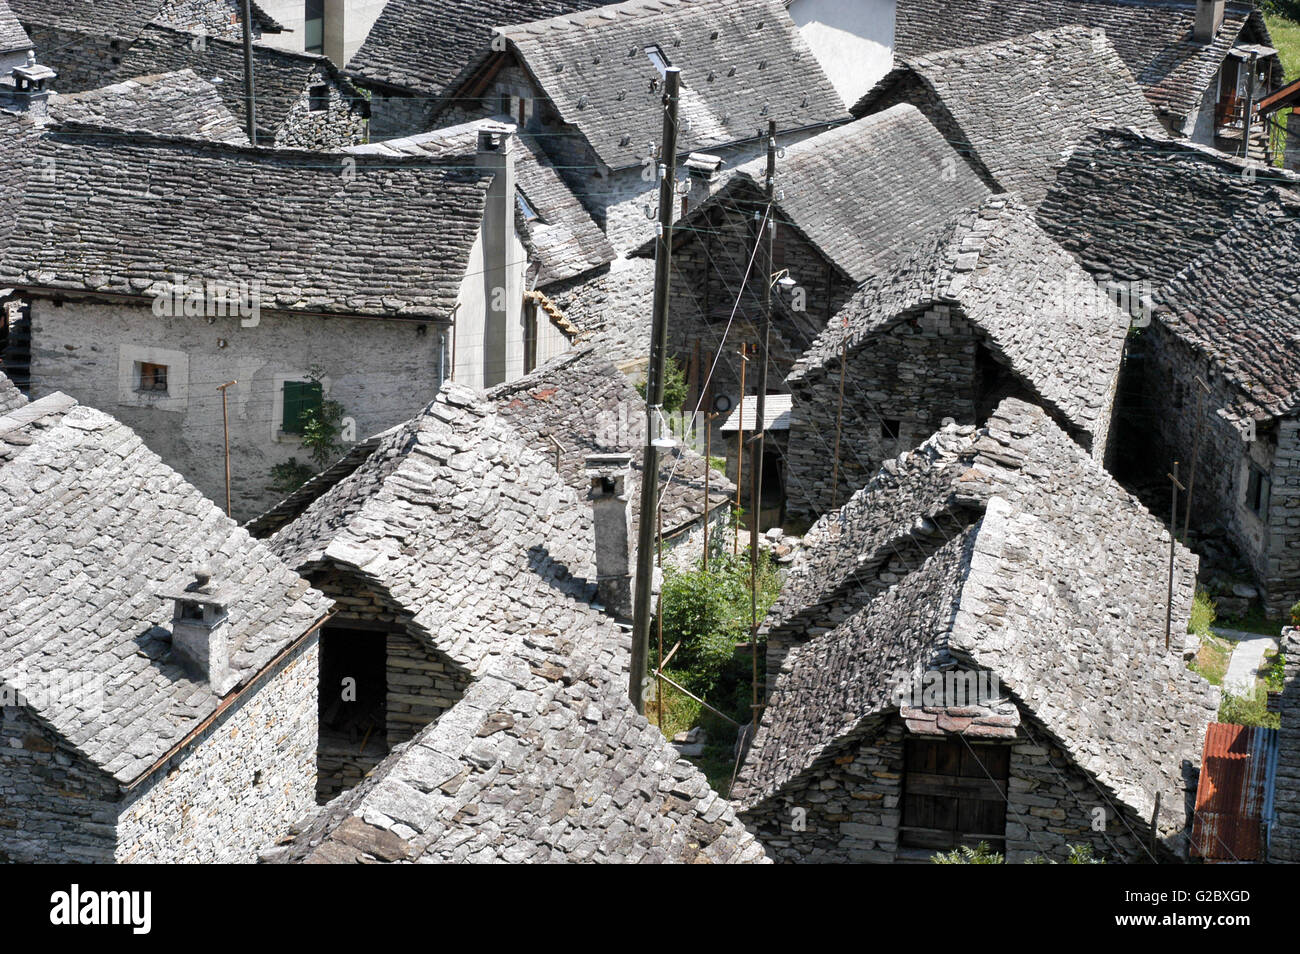 The rural village of Brione on Verzasca valley, Switzerland Stock Photo